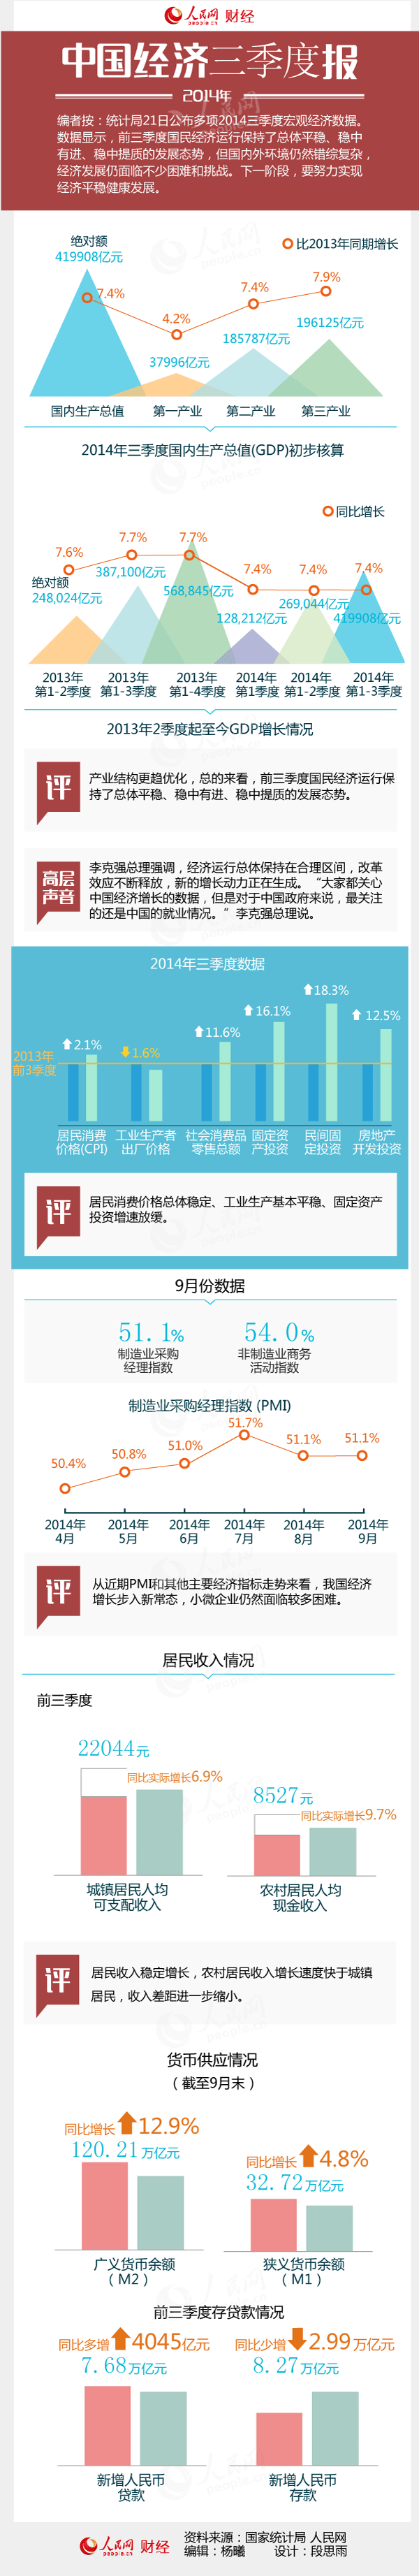 一张图读懂三季度中国宏观经济数据